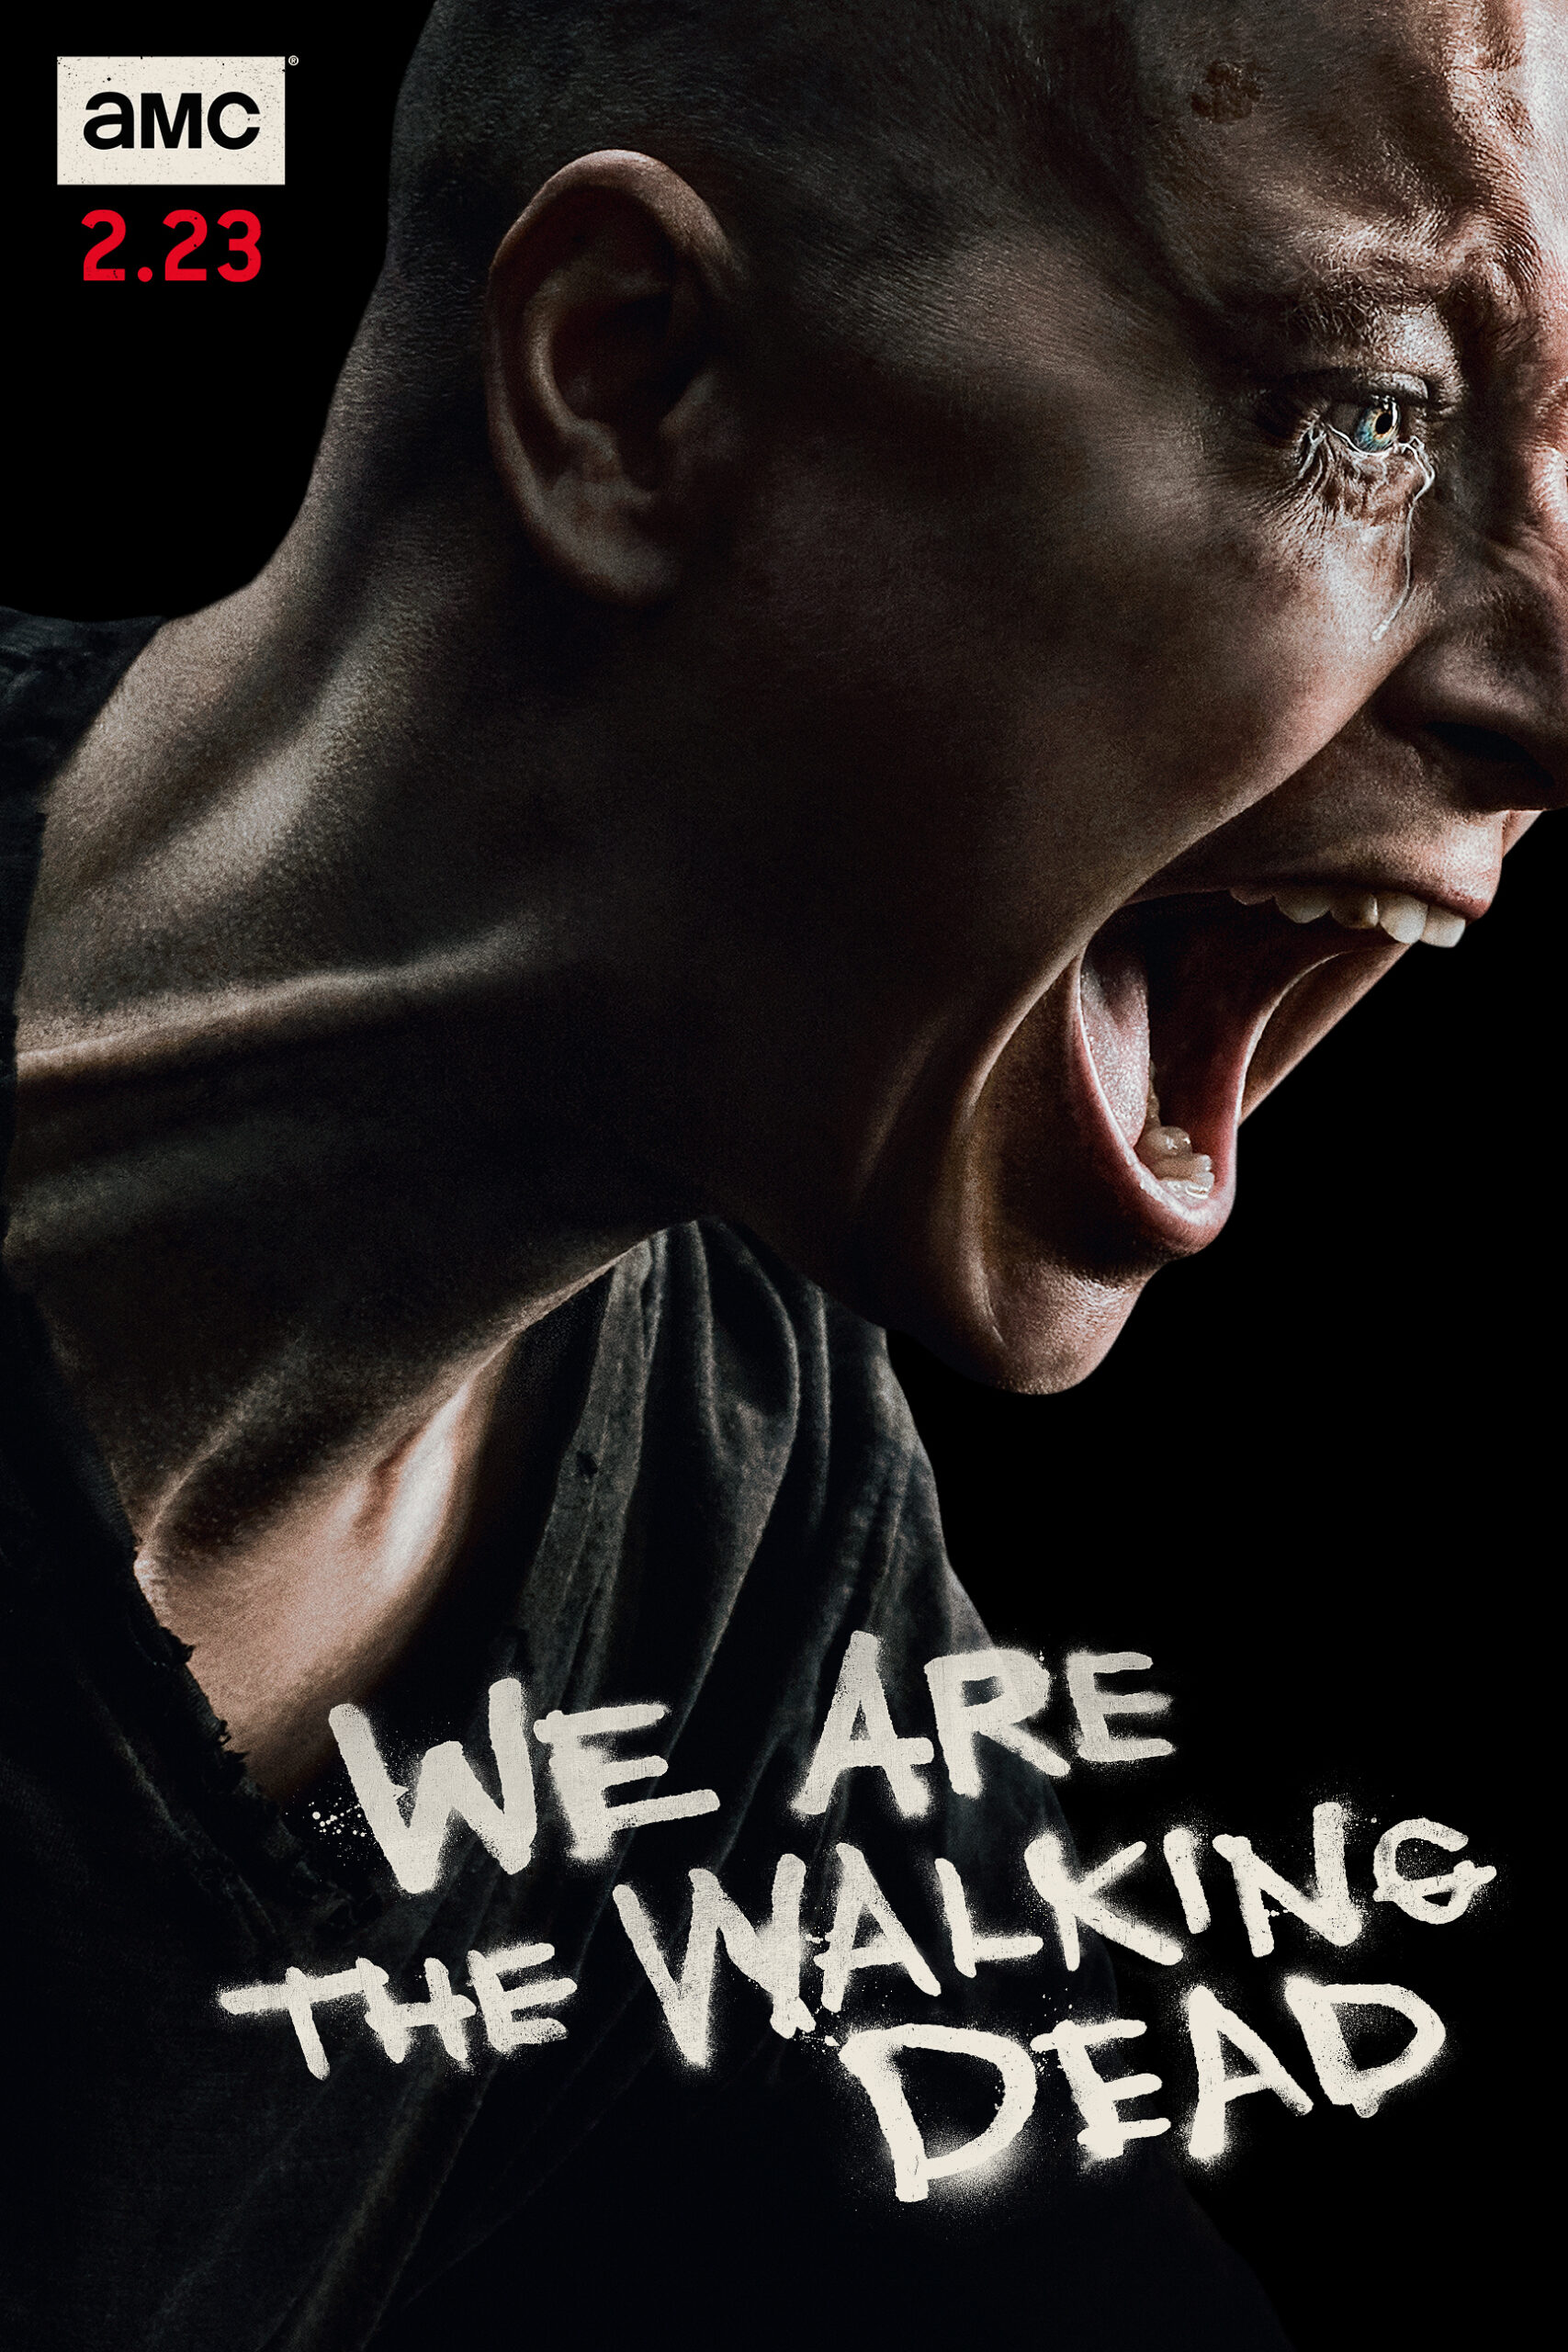 ดูหนังออนไลน์ฟรี The Walking Dead Season 4 EP10 เดอะวอล์กกิงเดด ปี4 ตอนที่10 [[Sub Thai]]